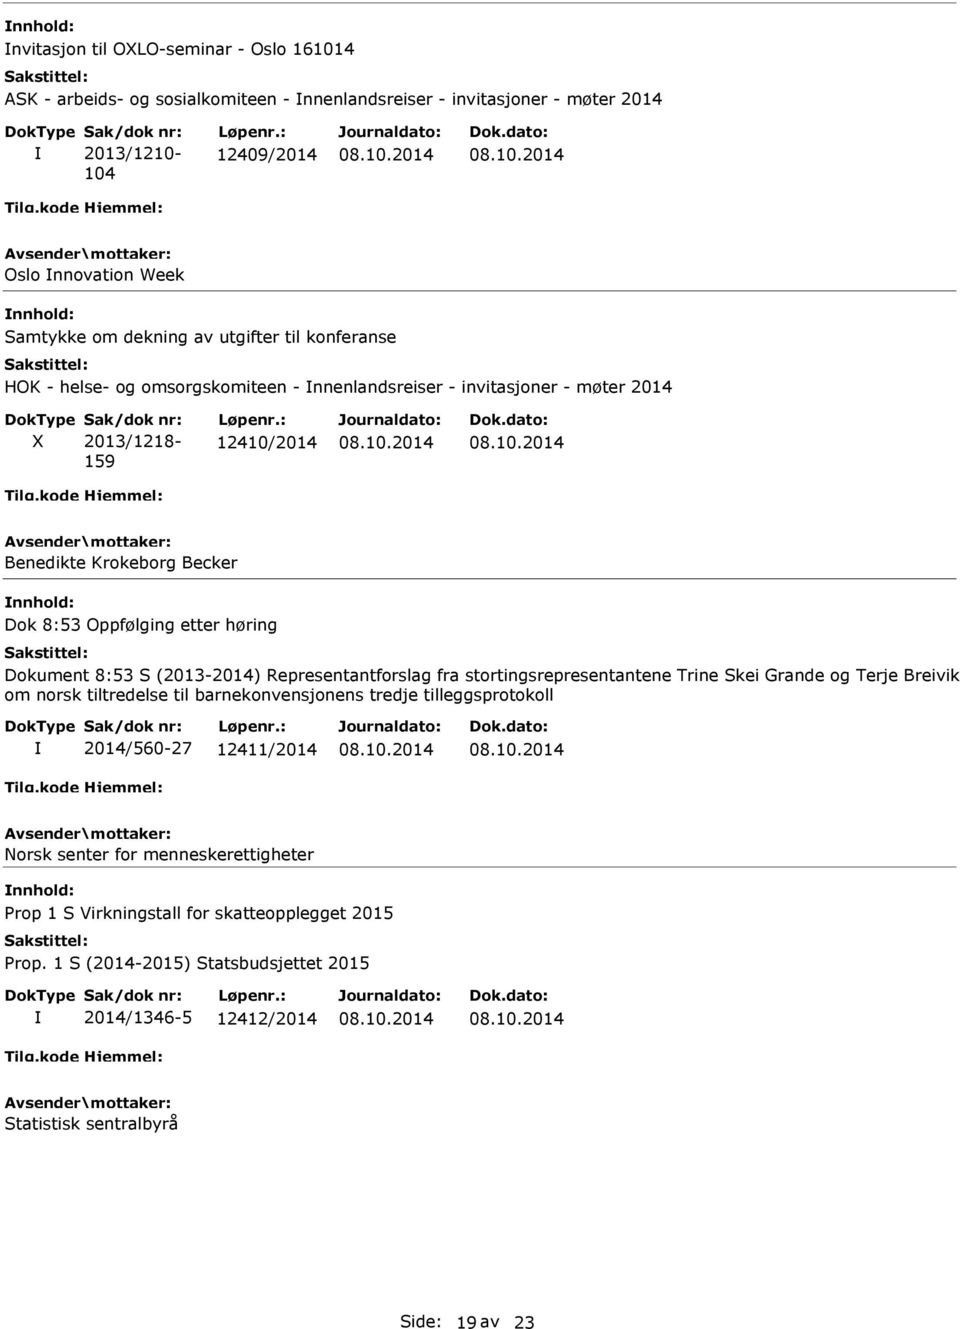 Oppfølging etter høring Dokument 8:53 S (2013-2014) Representantforslag fra stortingsrepresentantene Trine Skei Grande og Terje Breivik om norsk tiltredelse til barnekonvensjonens